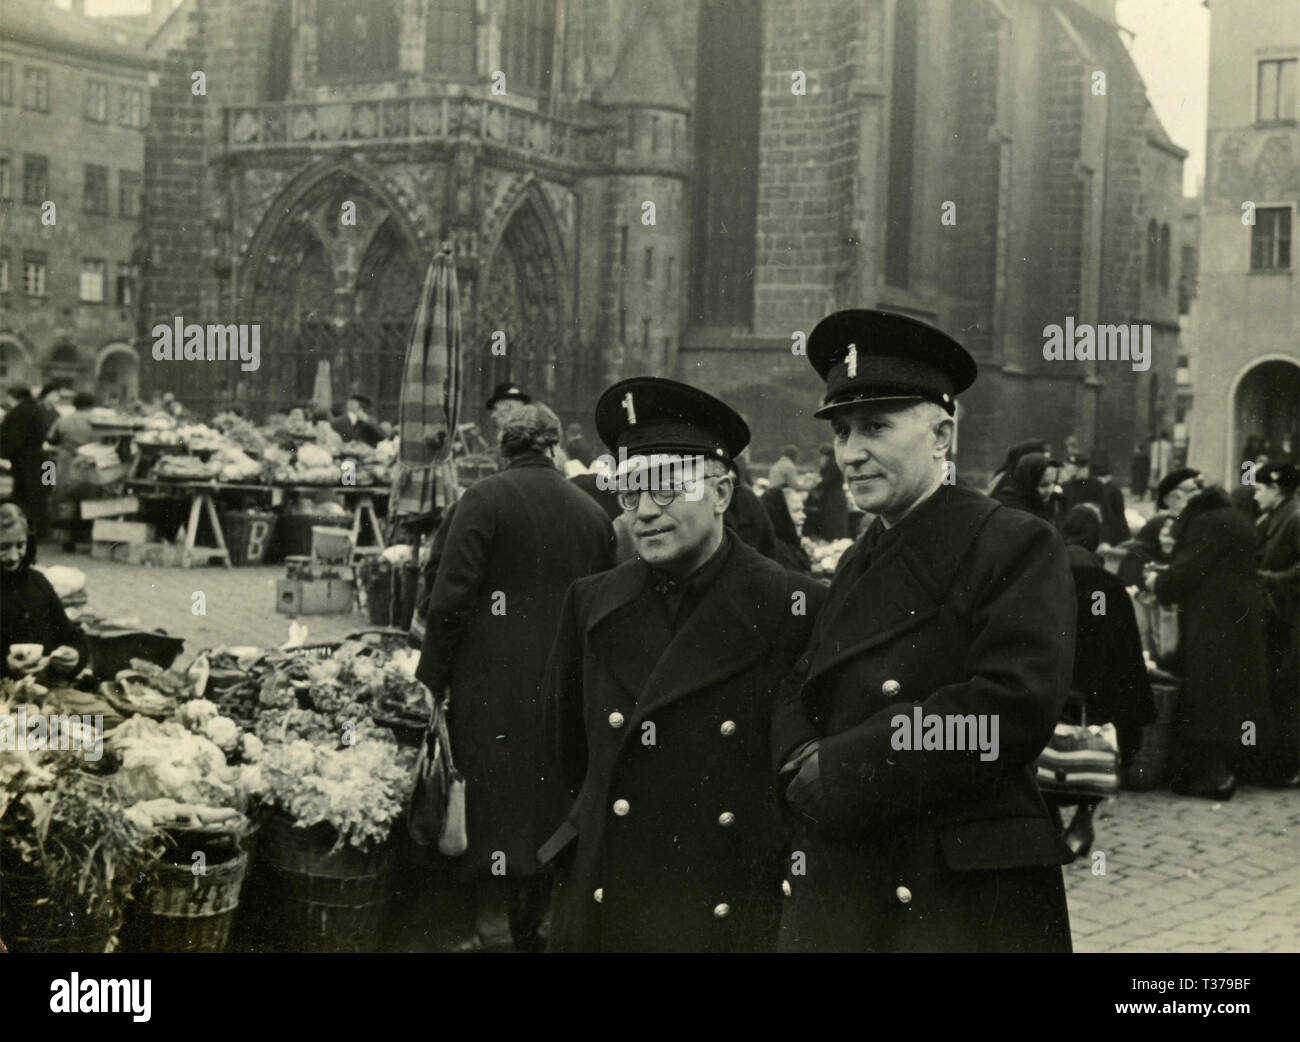 Zwei Mann mit faschistischen Uniformen auf dem Markt, Italien 1930 Stockfoto